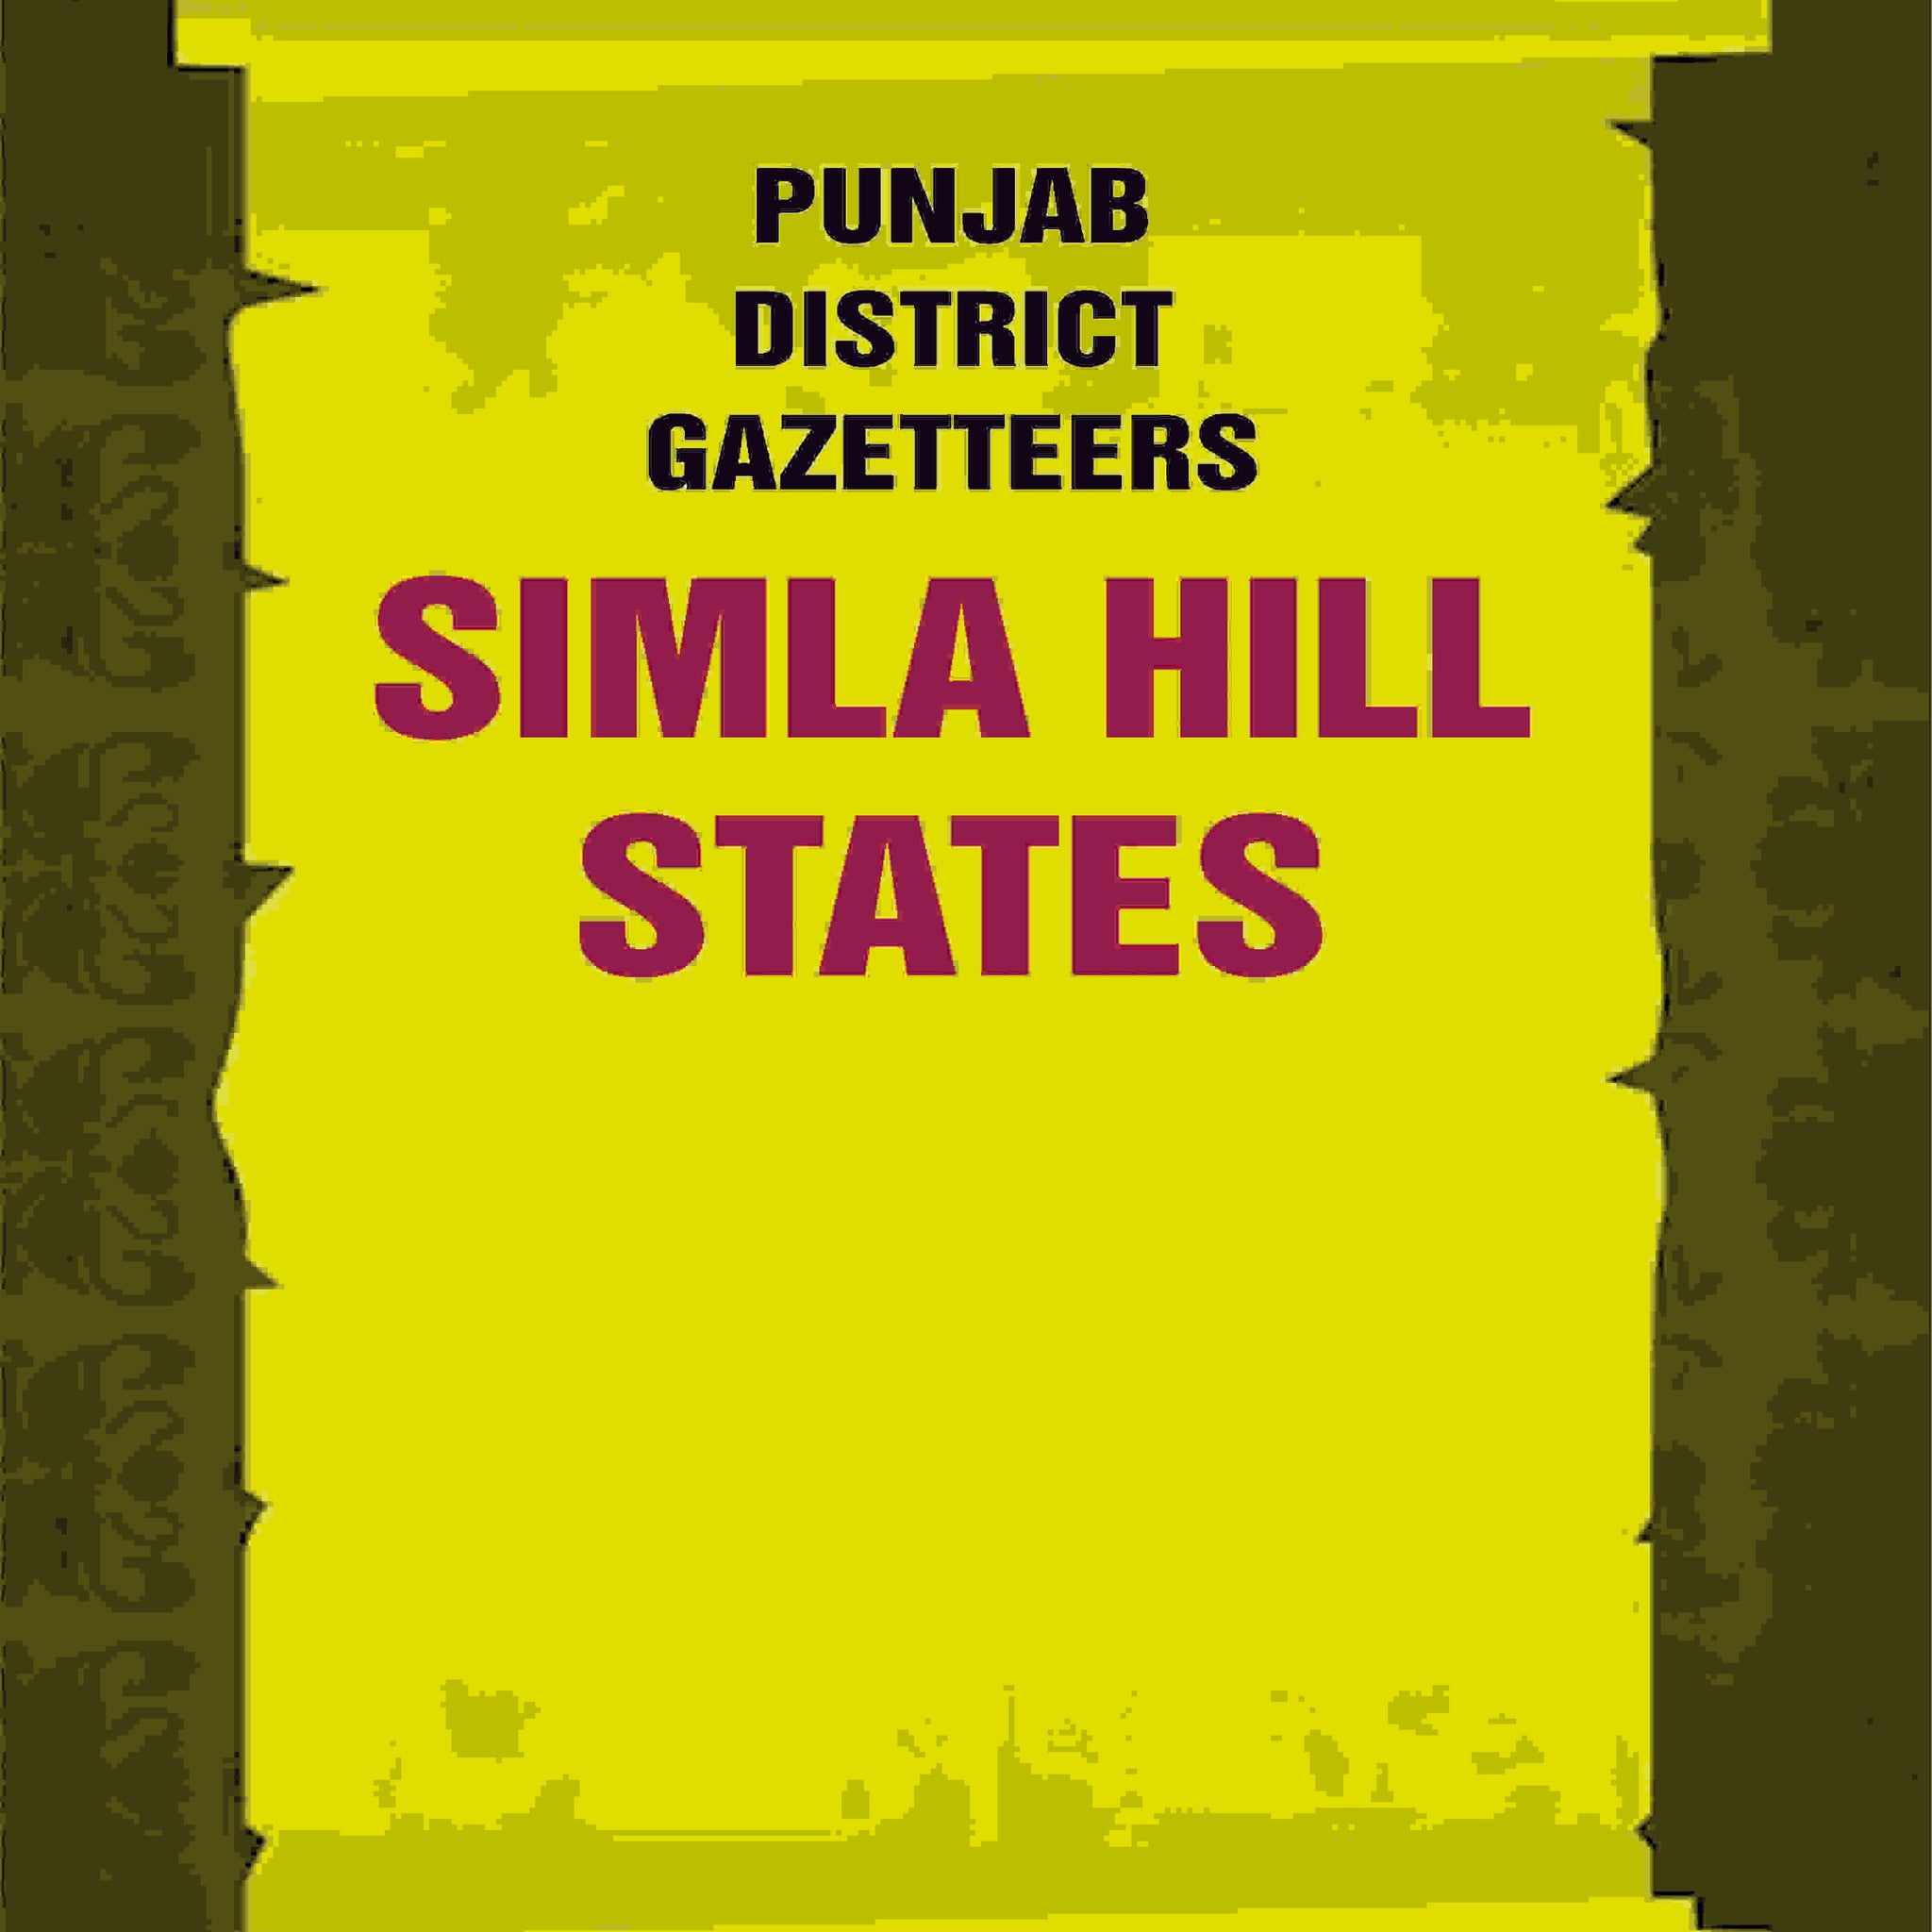 Punjab District Gazetteers: Simla Hill States